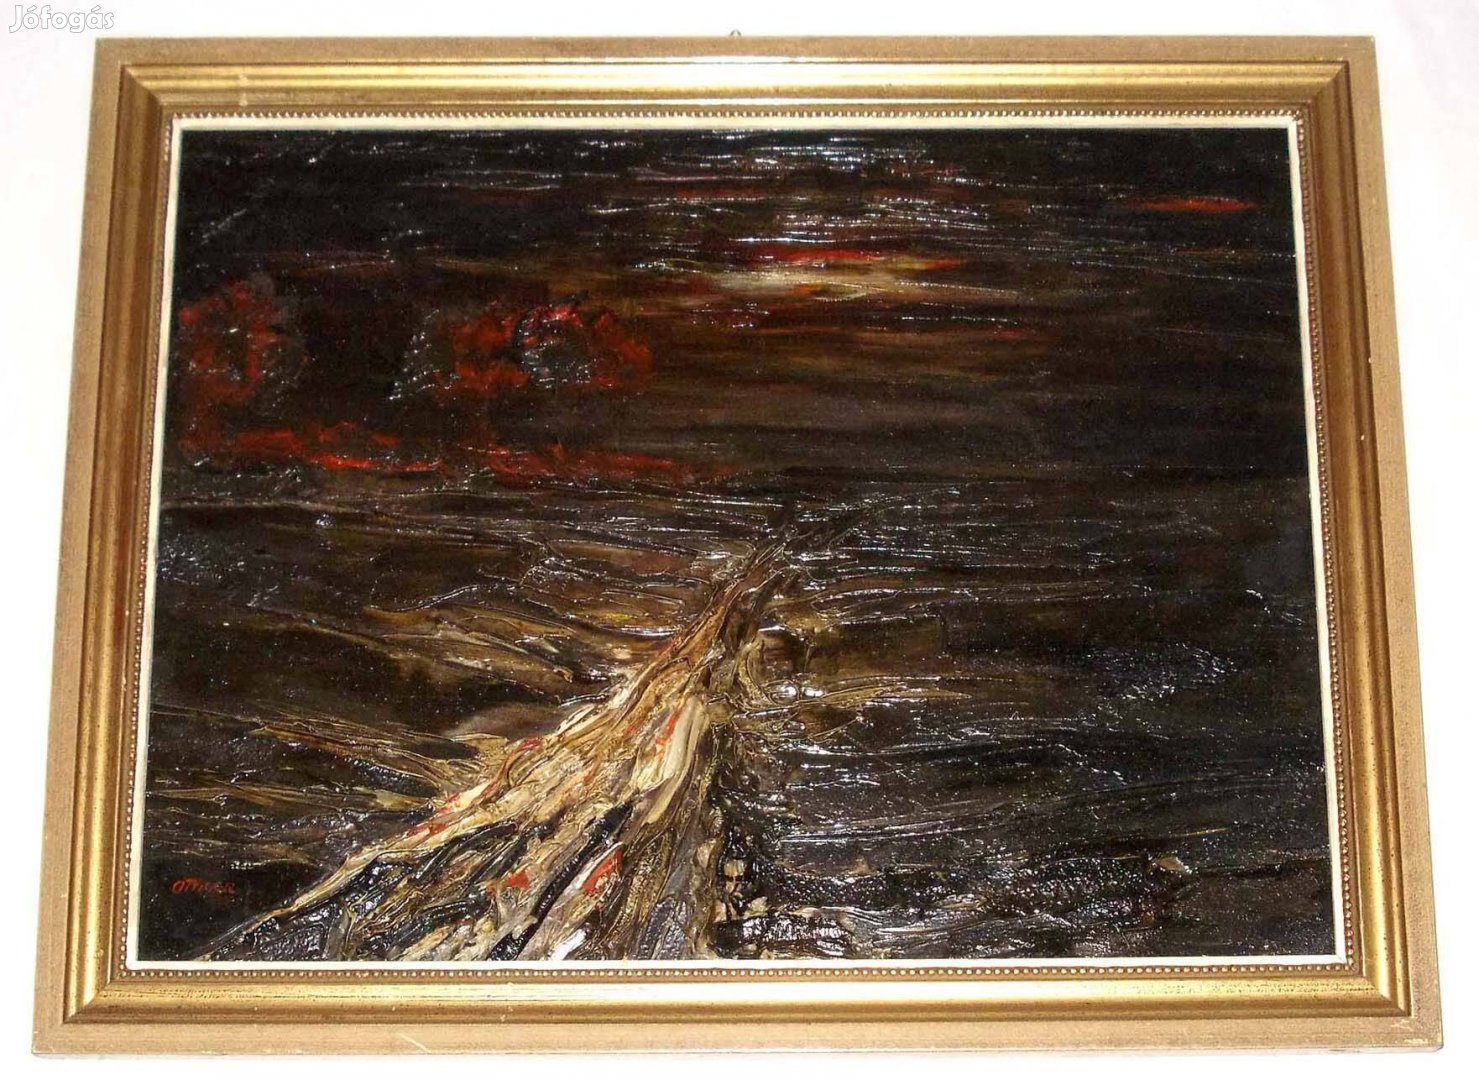 Robert Ottiger festmény. A svájci művész erős faktúrájú alkotása